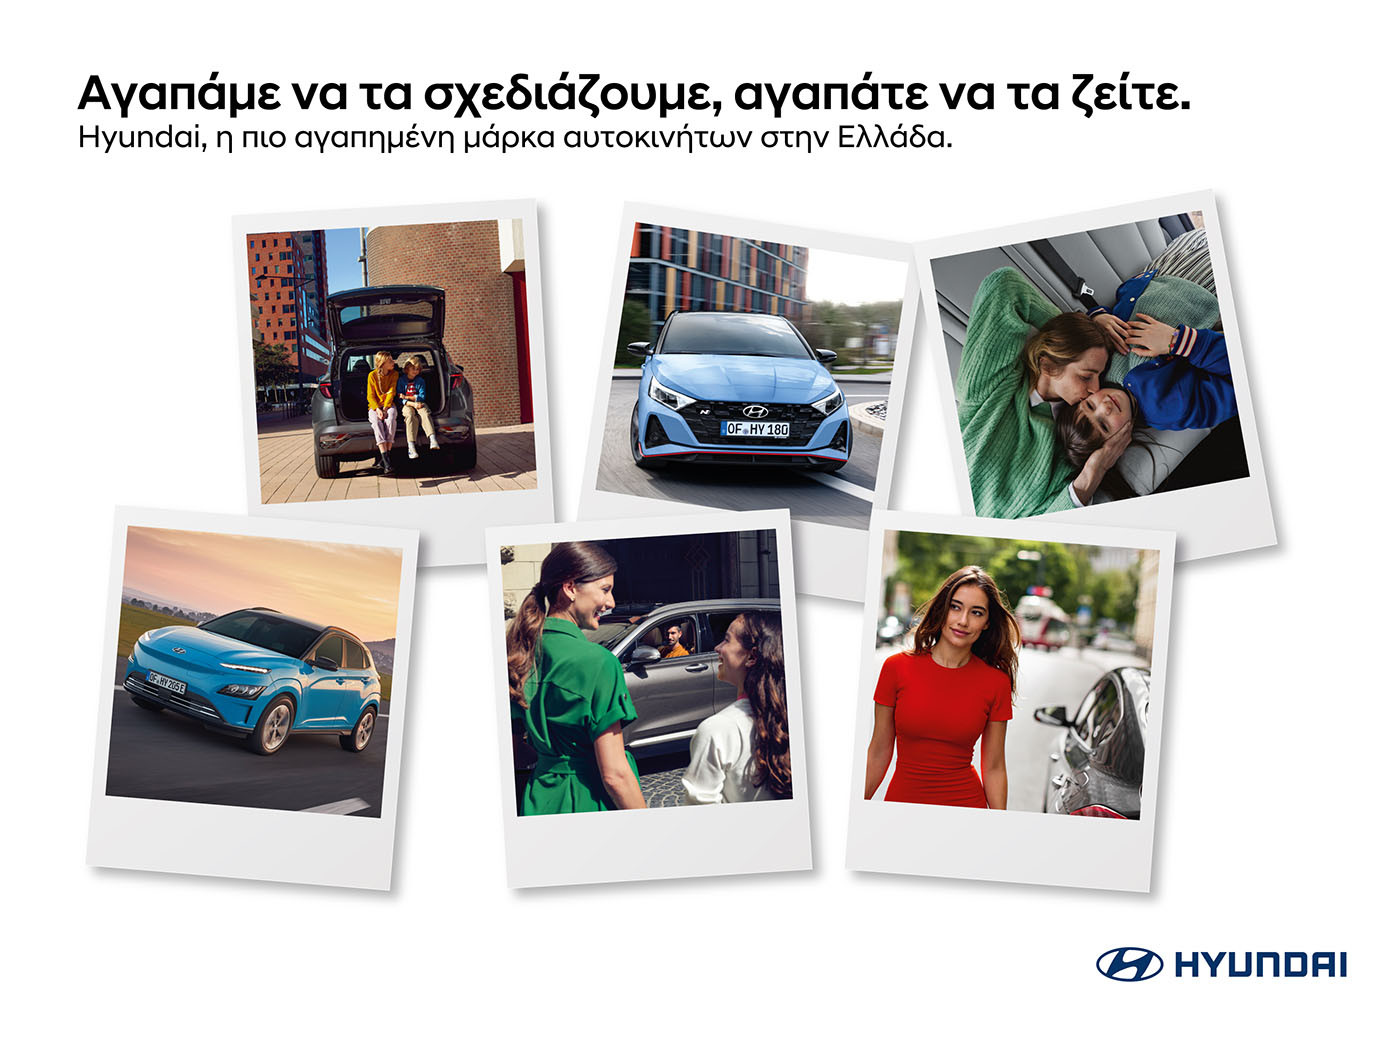 Ποια εταιρία αυτοκινήτων είναι η αγαπημένη των Ελλήνων;